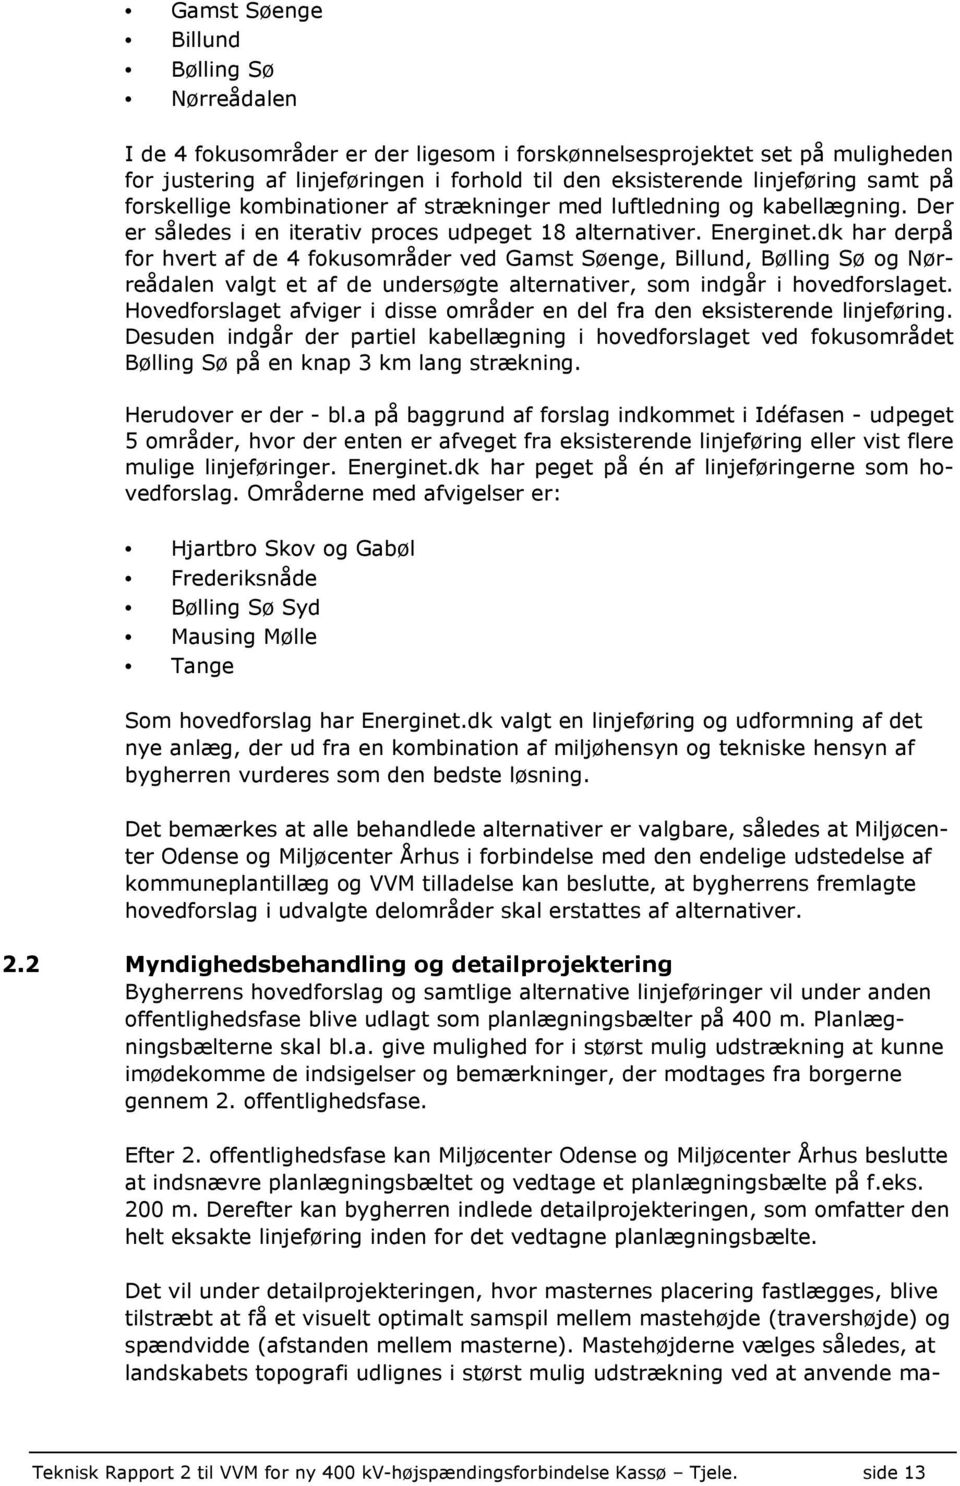 dk har derpå for hvert af de 4 fokusområder ved Gamst Søenge, Billund, Bølling Sø og Nørreådalen valgt et af de undersøgte alternativer, som indgår i hovedforslaget.